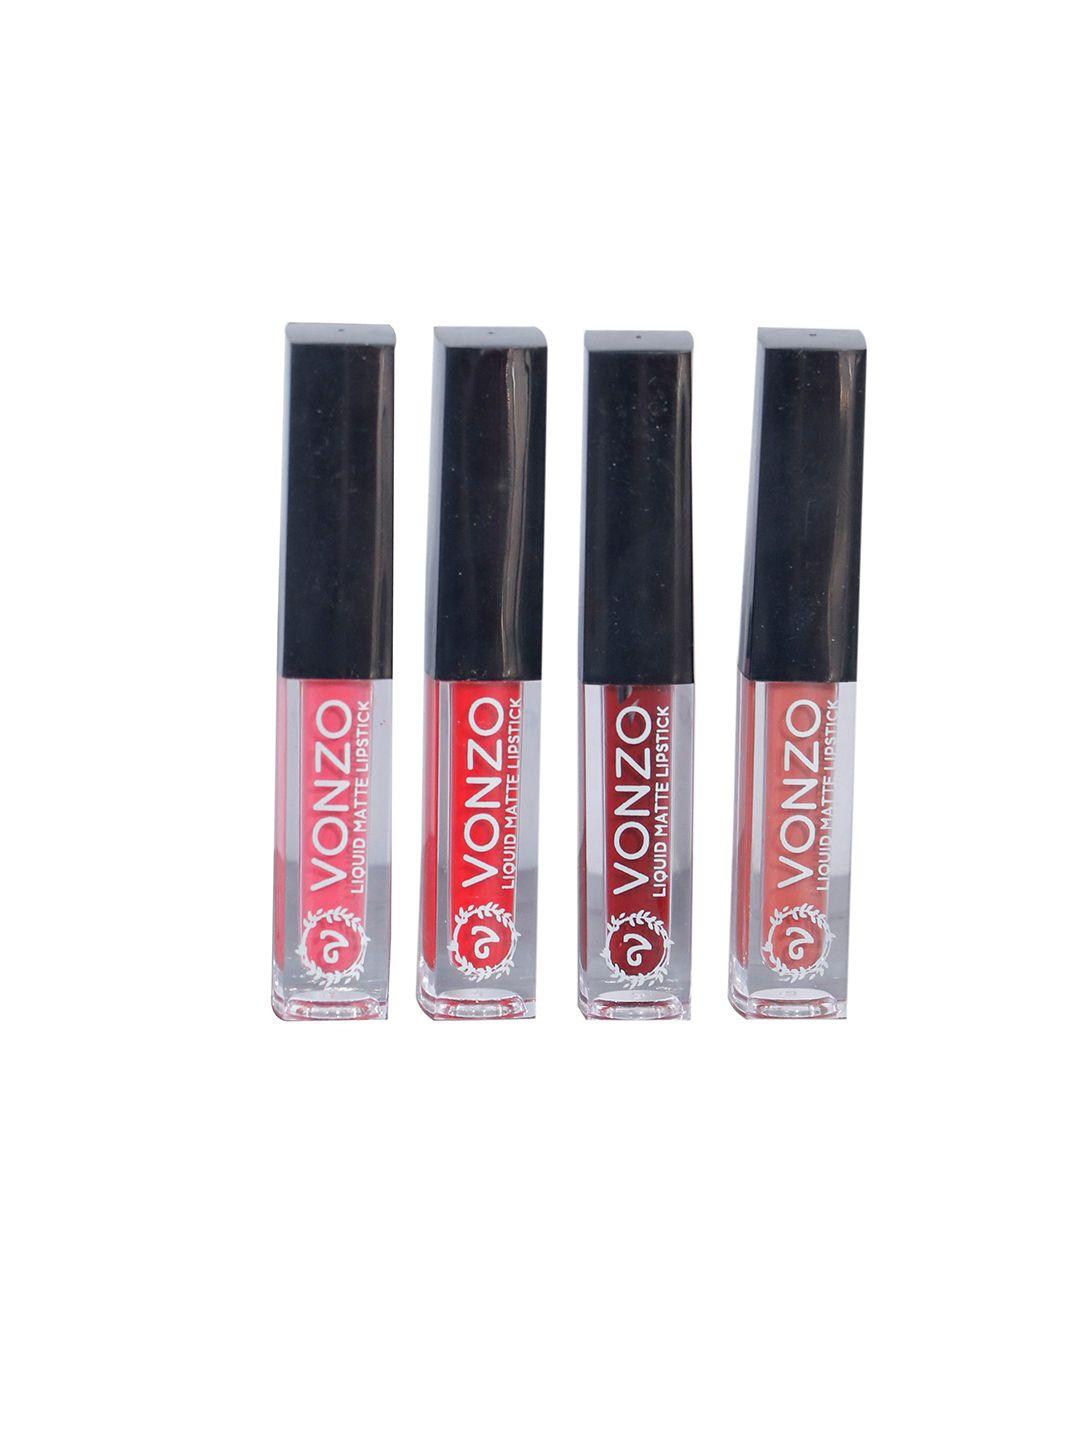 vonzo set of 4 liquid lipstick 8 ml each